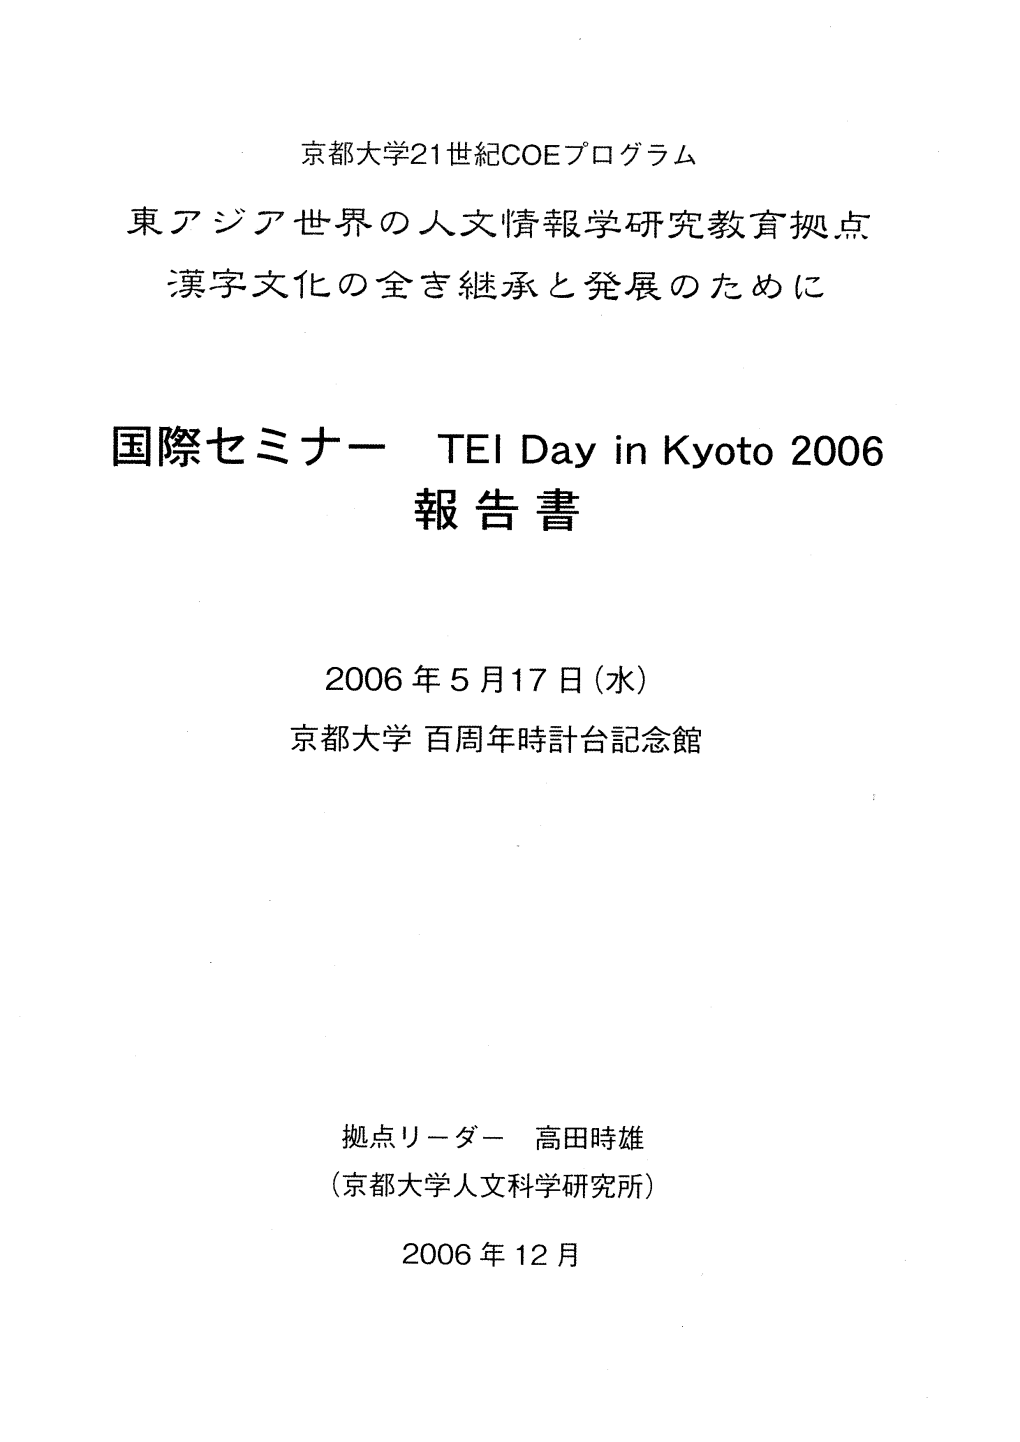 Teidaykyoto2006.Pdf